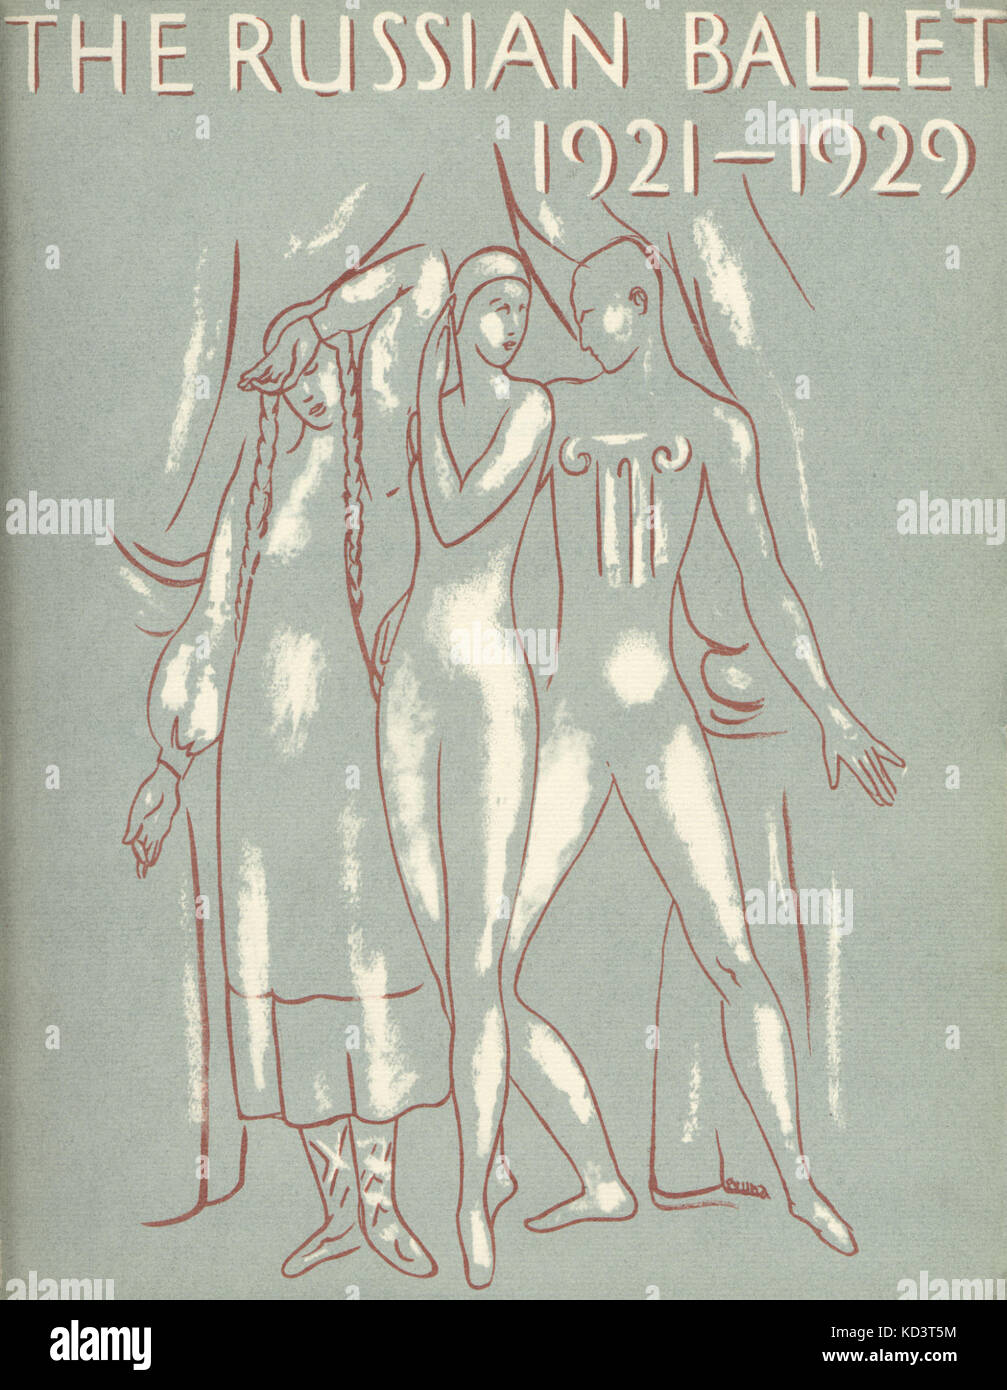 Ballets Russes per la copertina del libro - Il Balletto Russo. 1921-1929 - pubblicato nel 1931, Londra (schizzo di ballerini) Foto Stock